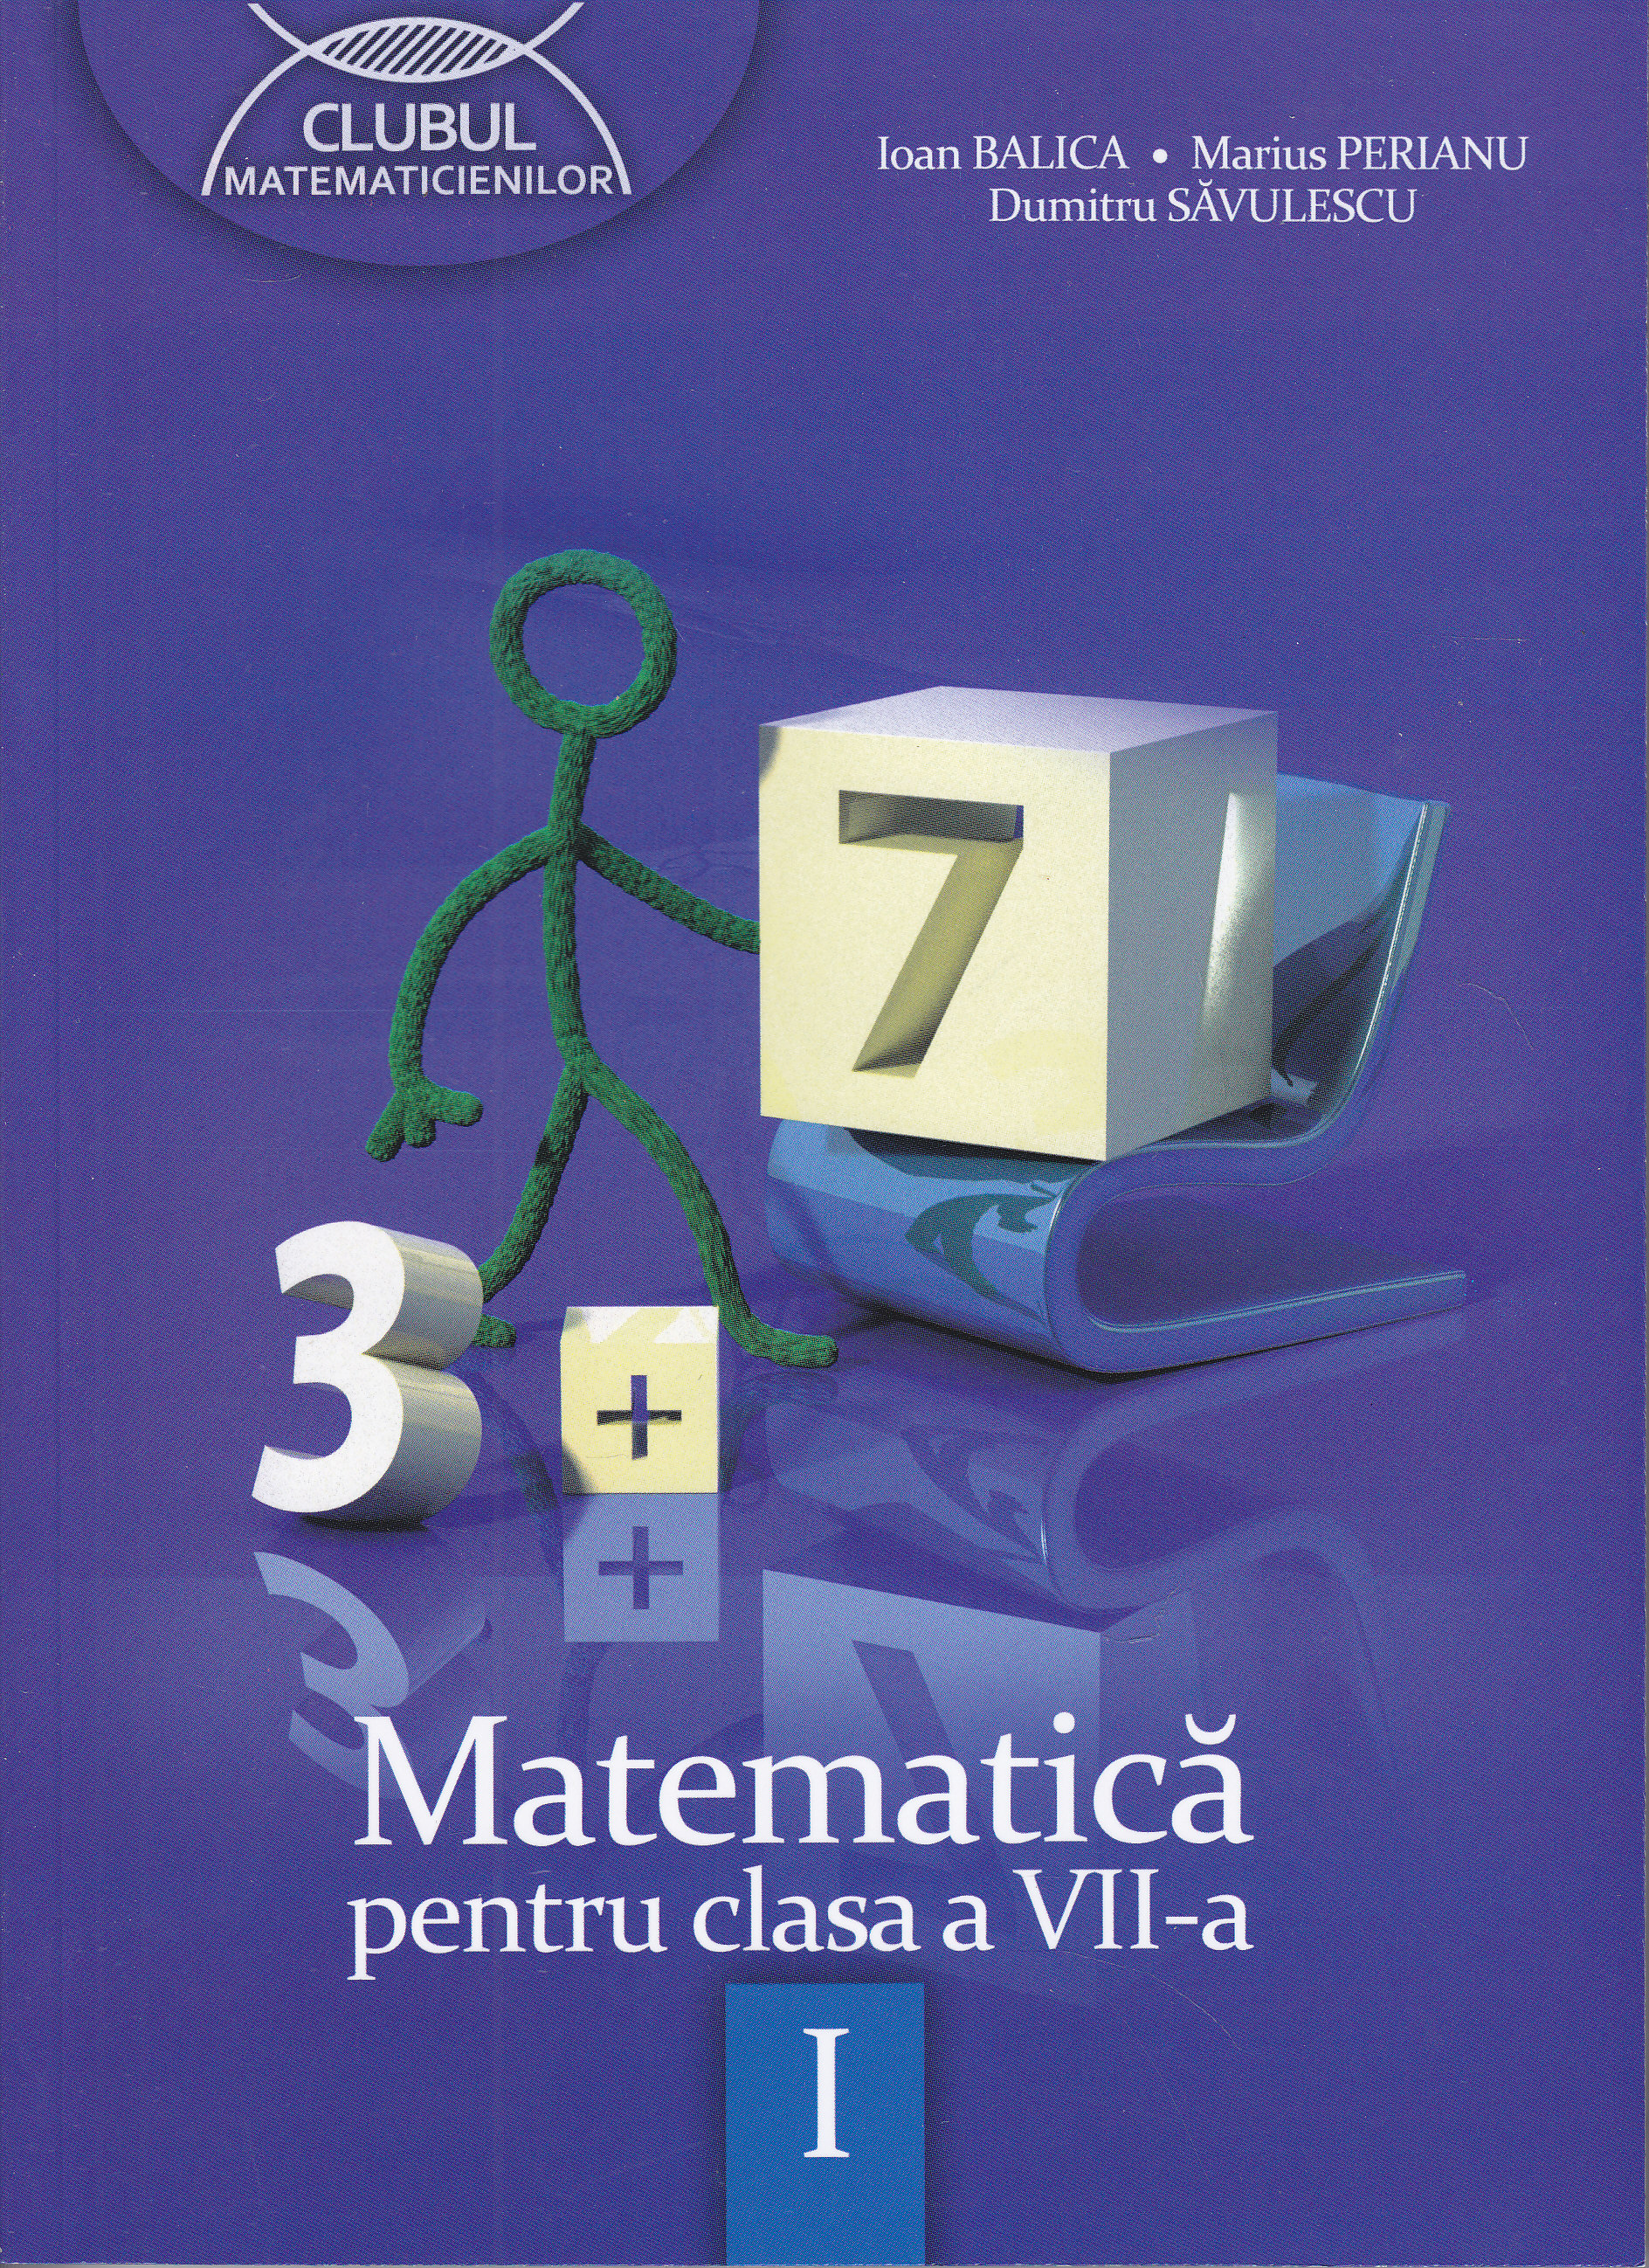 Matematica Cls 7 Semestrul I Ed.2012 - Ioan Balica, Marius Perianu, Dumitru Savulescu